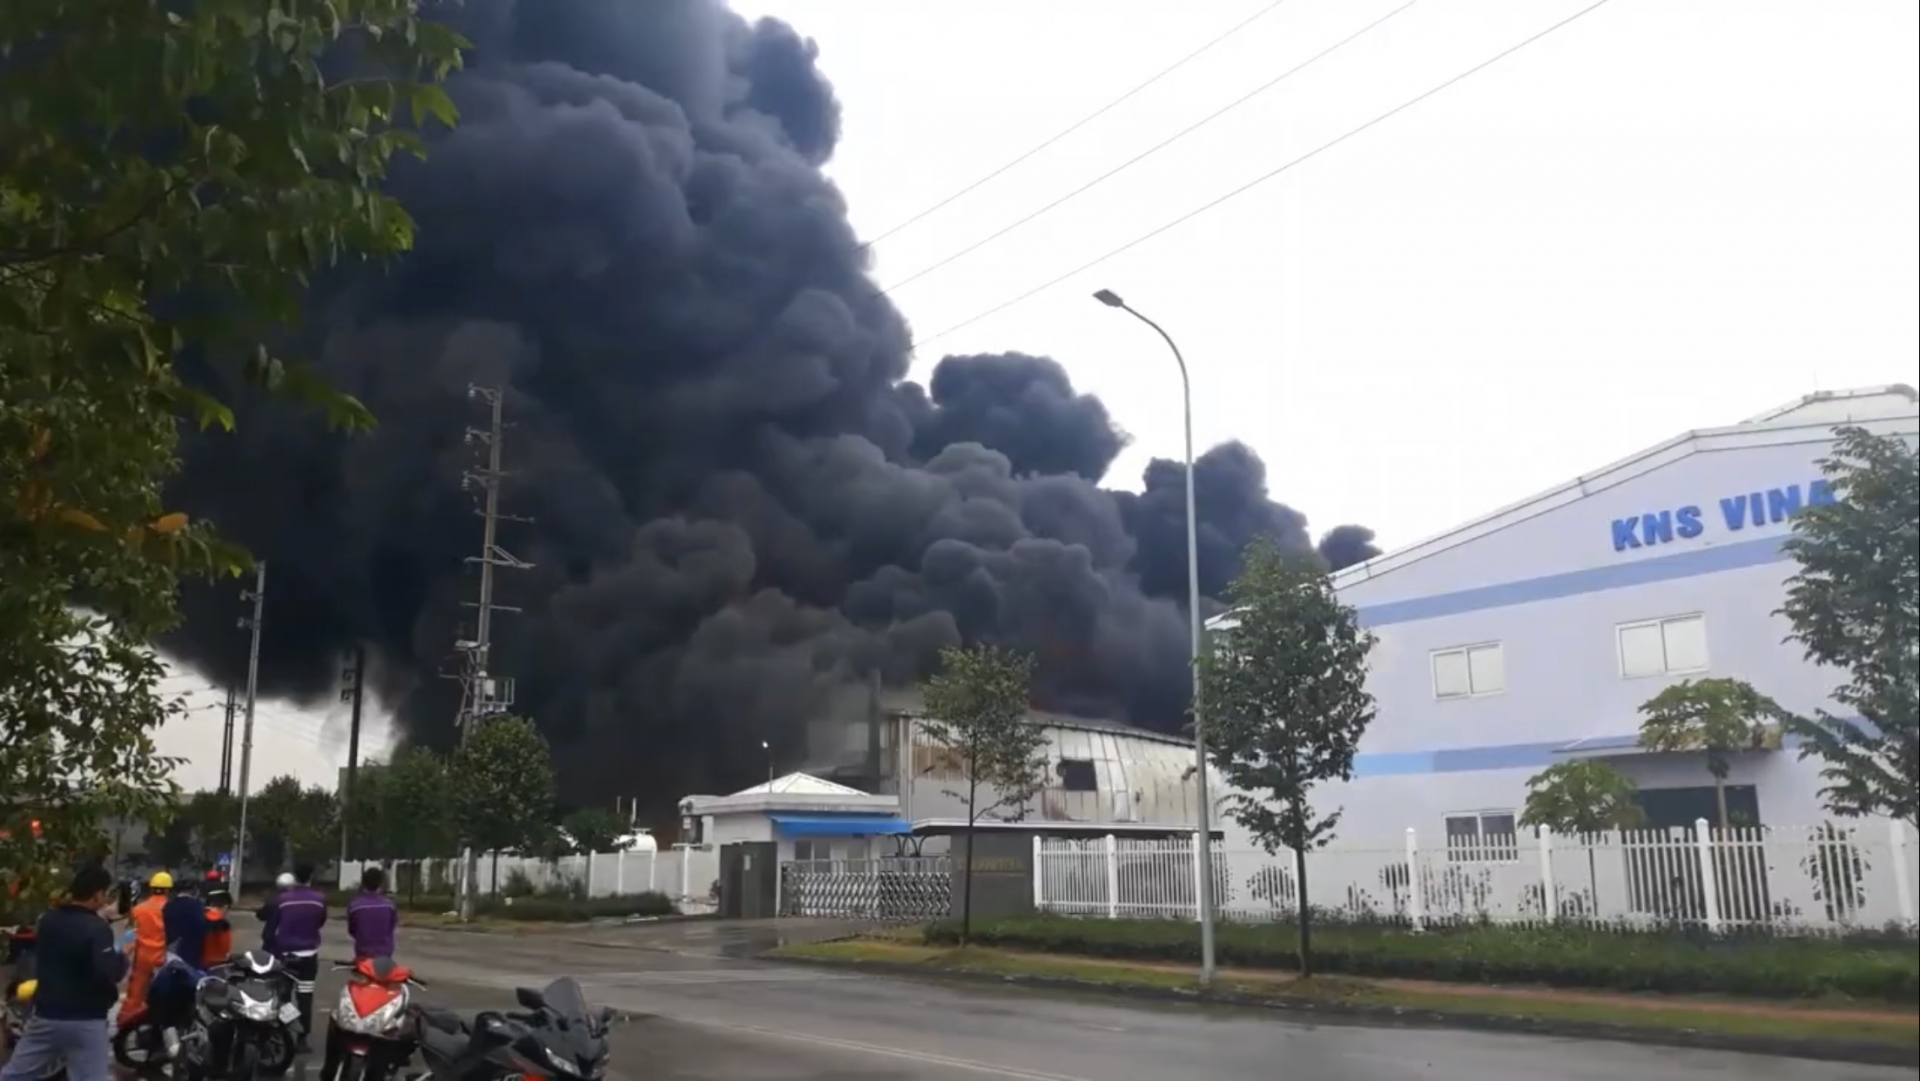 Vụ cháy nhà xưởng ở Vân Trung: Người trong cuộc kể lại sự việc